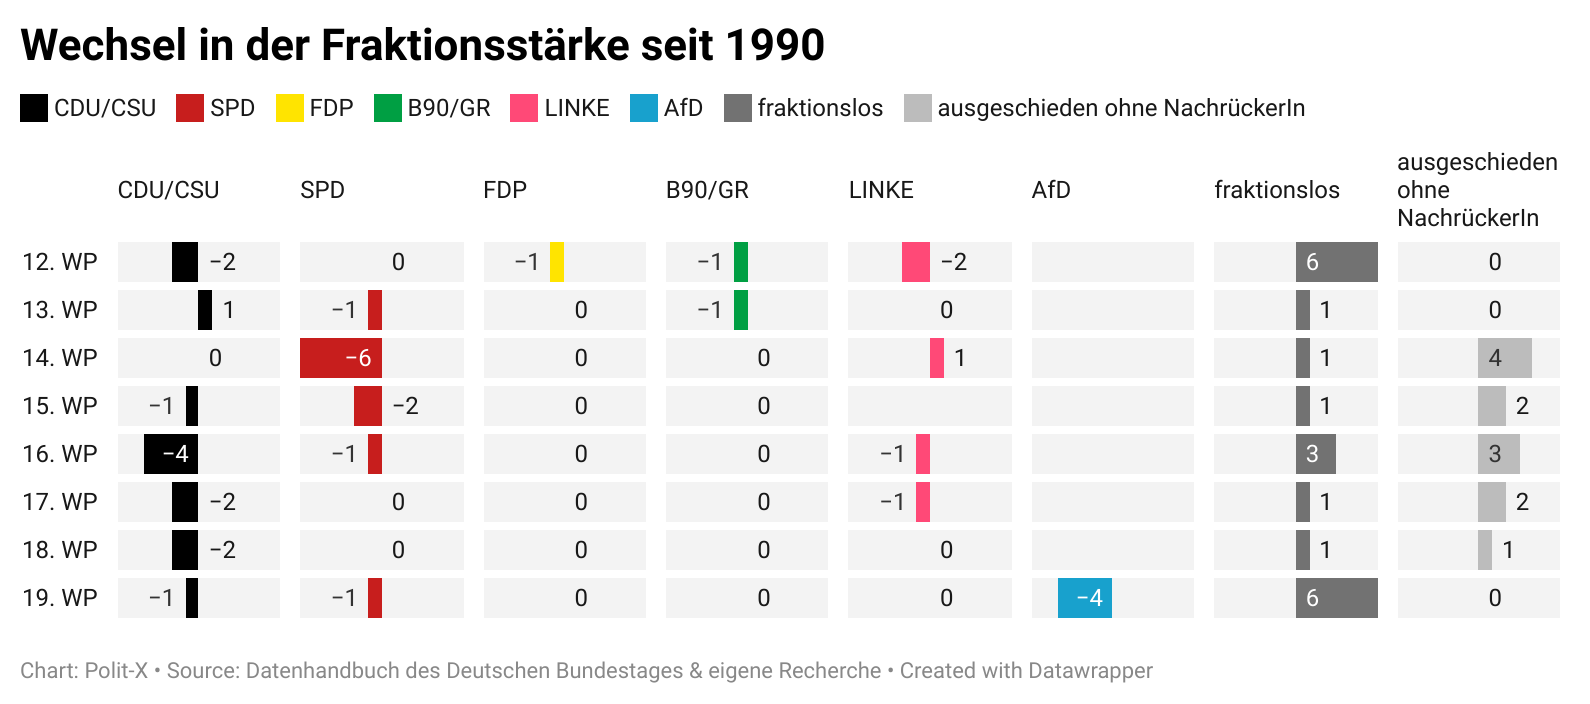 Fraktionswechsel im Deutschen Bundestag seit 1990